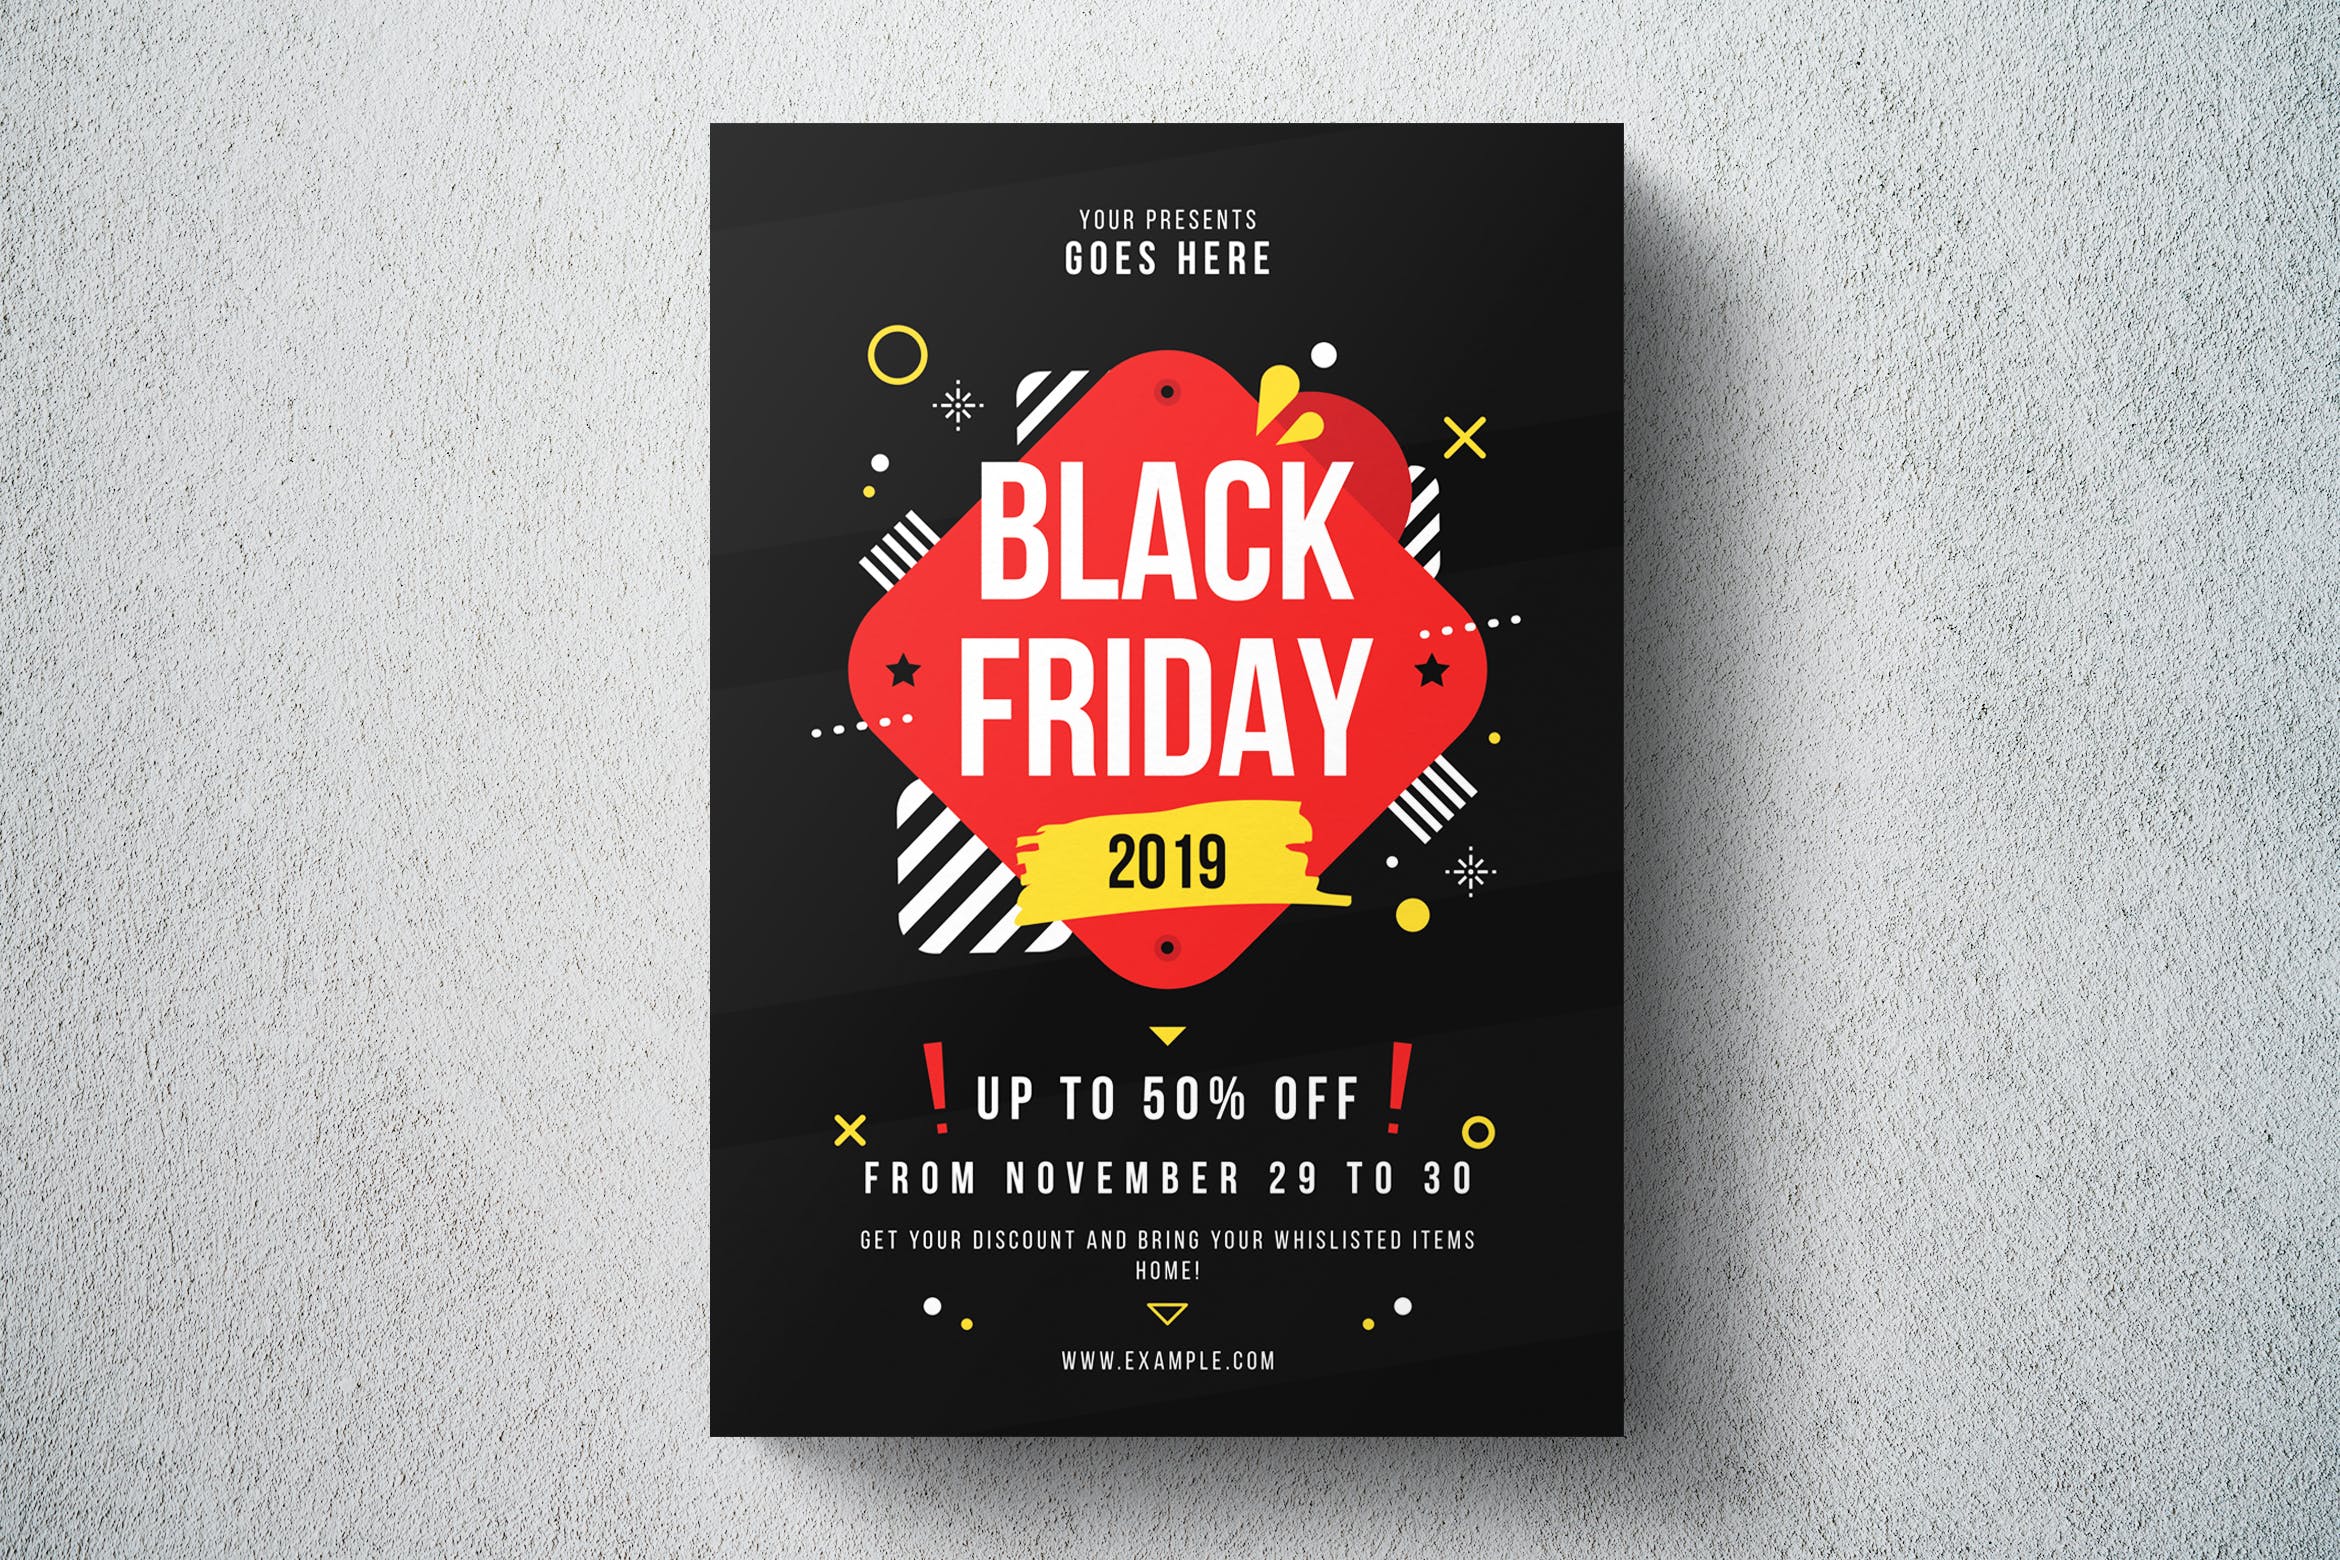 2019年黑色星期五购物节促销广告海报传单设计模板 Black Friday Flyer Template插图